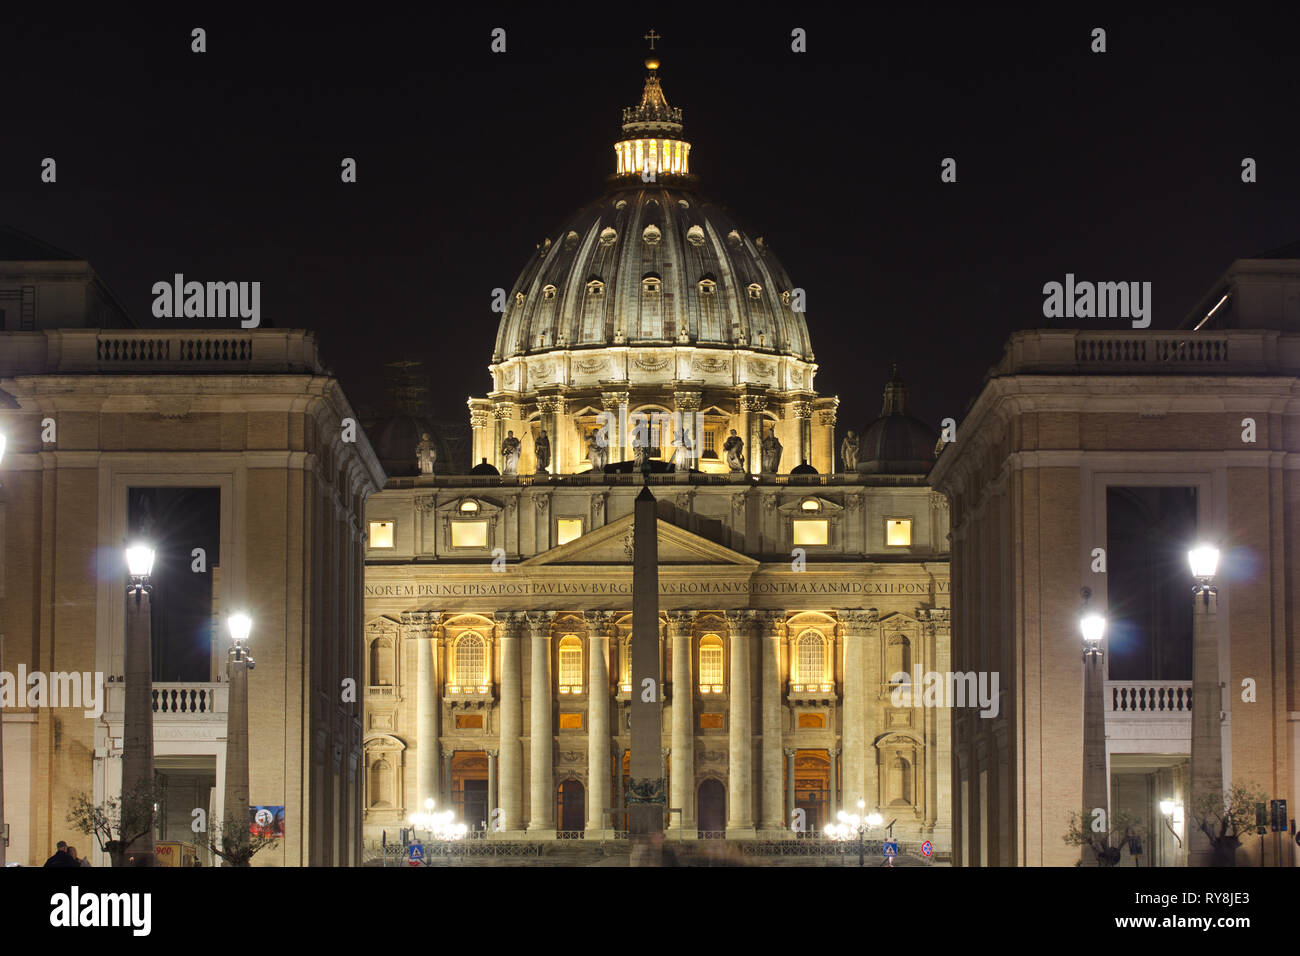 Vista frontale della facciata principale della Basilica di San Pietro durante la notte da via della Conciliazione - (Basilica di san Pietro - Città del Vaticano - Roma Foto Stock